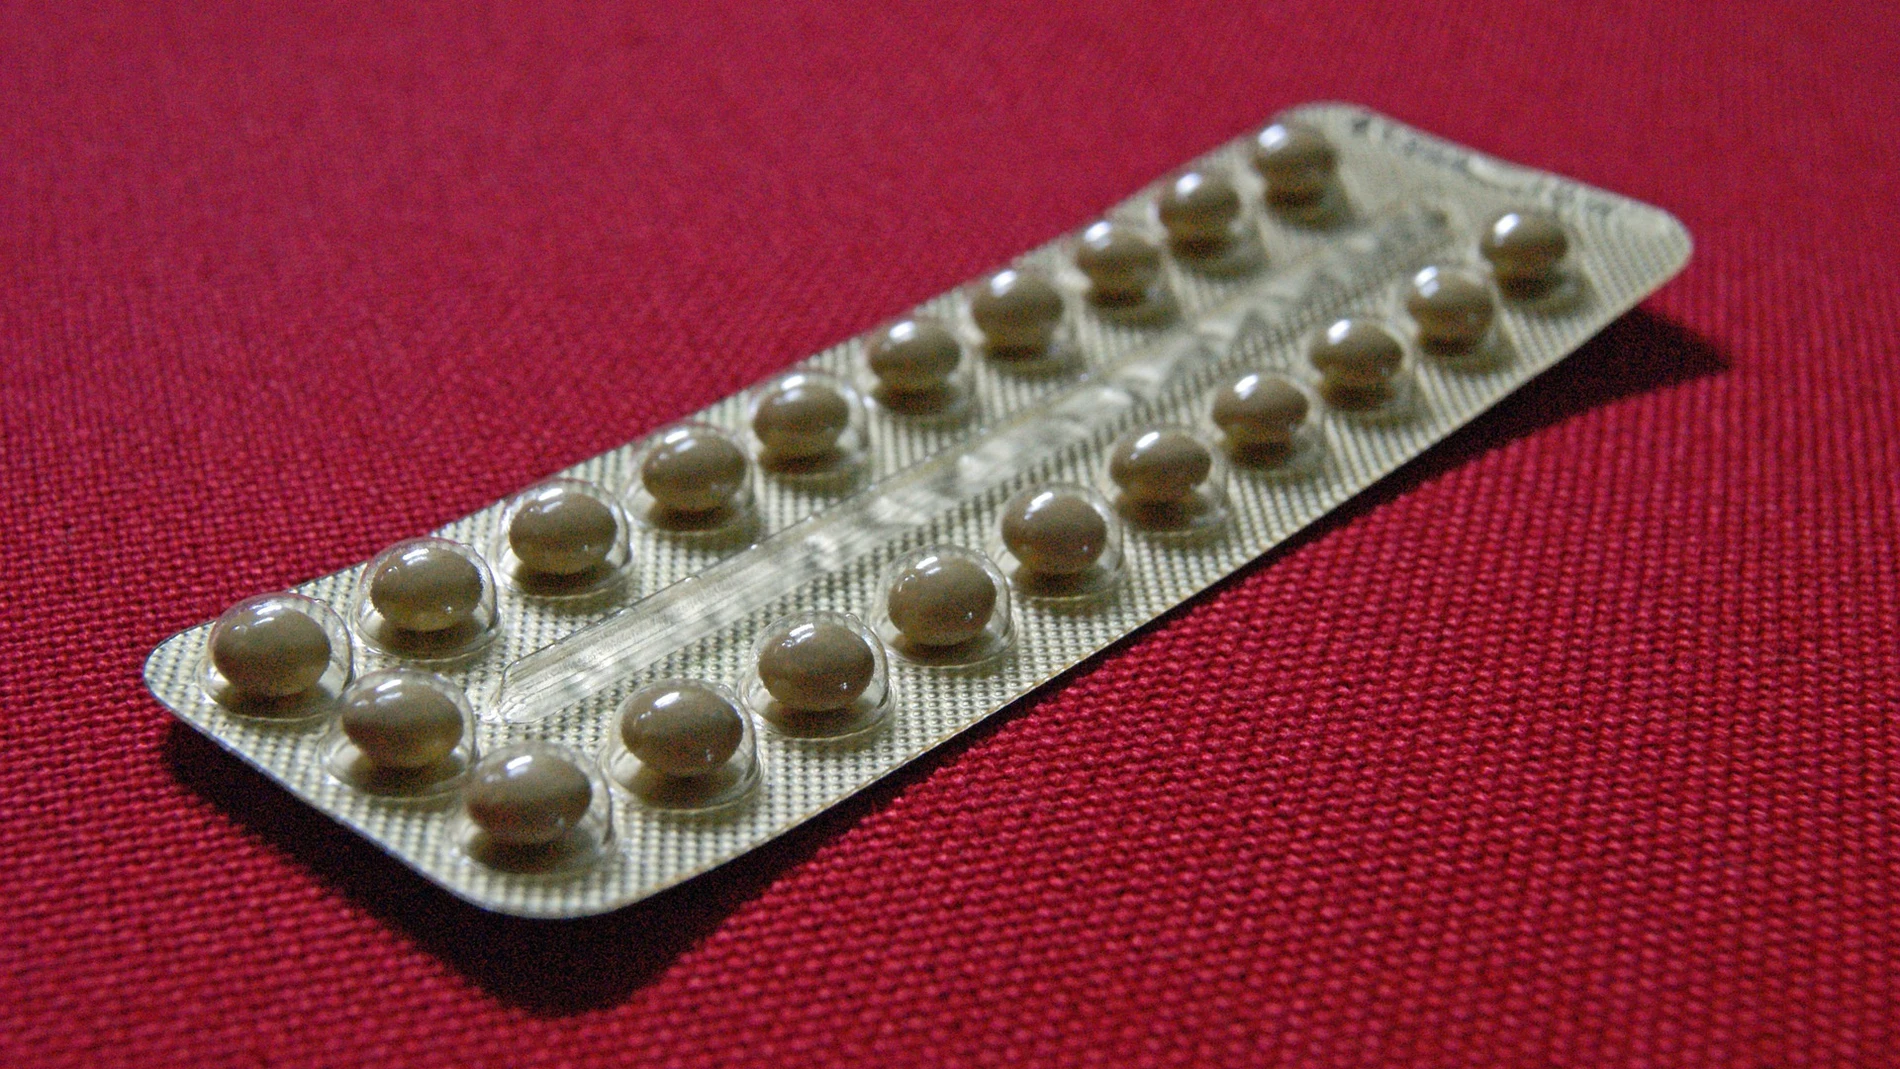 Los anticonceptivos serán gratuitos en Francia para las menores de 25 años